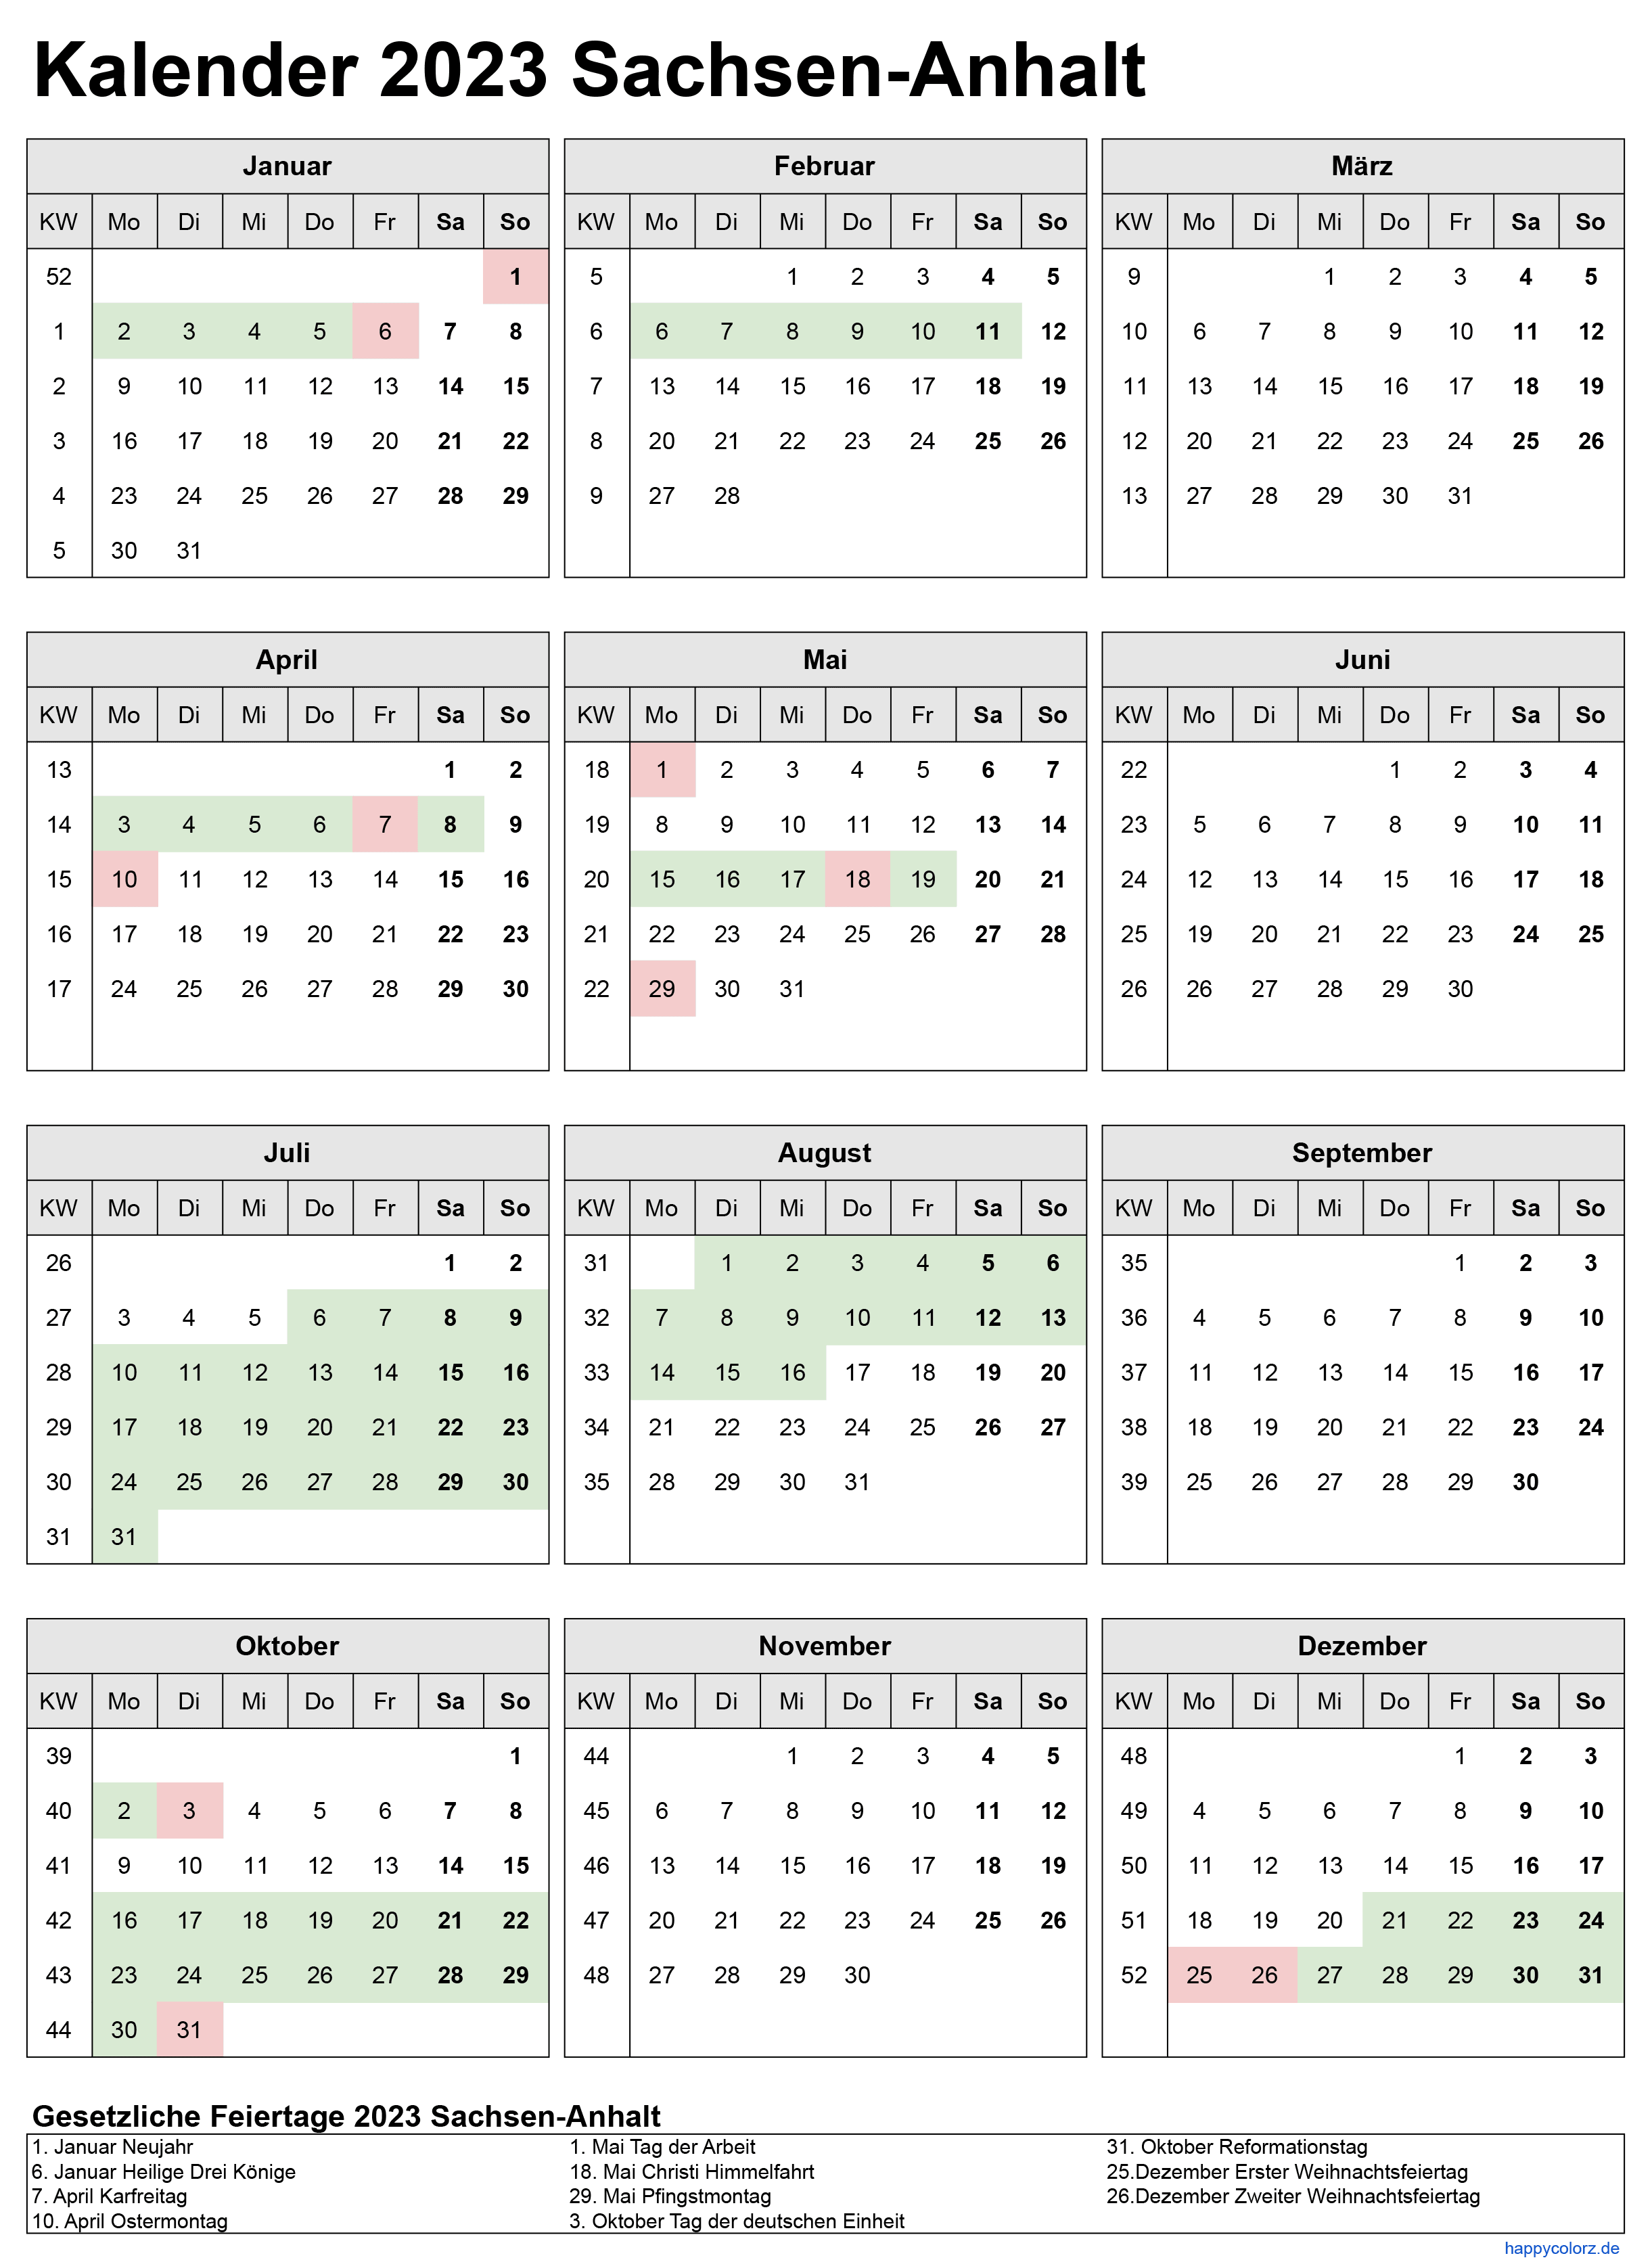 Kalender 2023 Sachsen-Anhalt zum Ausdrucken